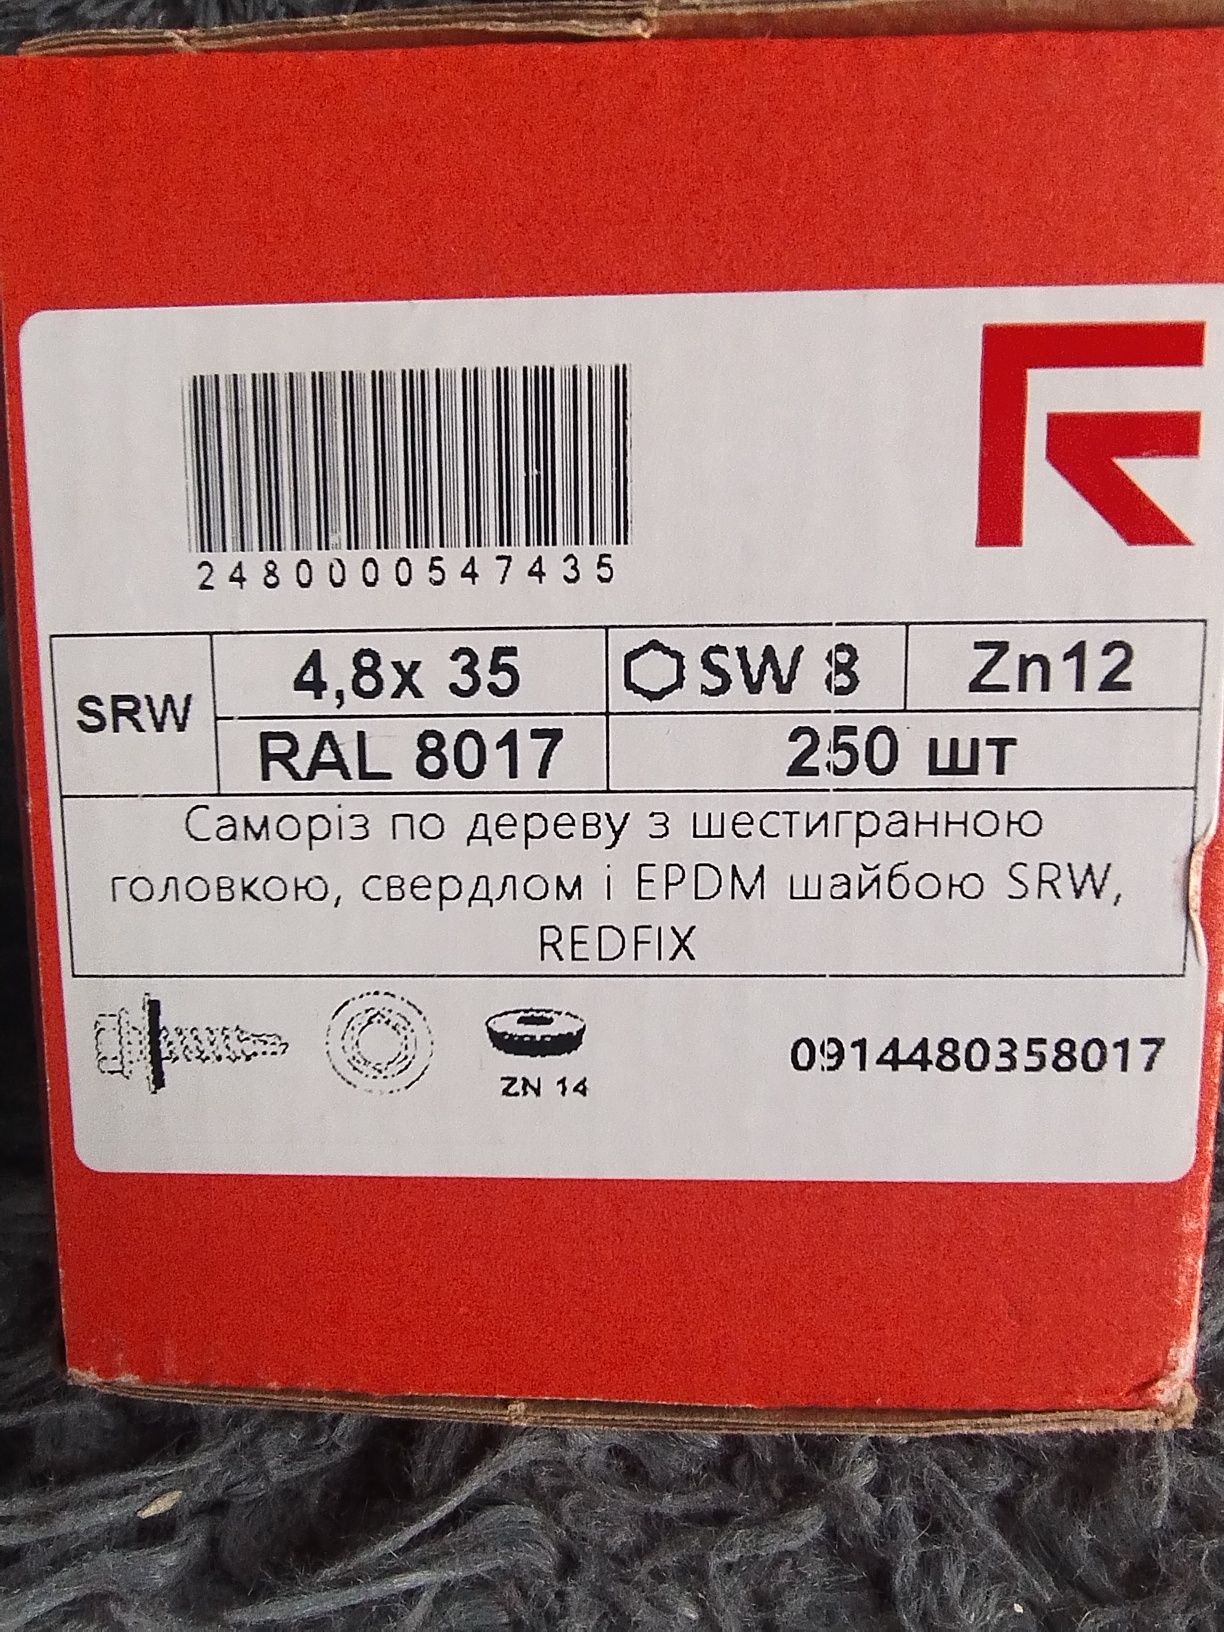 Кровельные Саморезы RedFix RAL 8017 - Новые. Высокого Качества 4,8x35